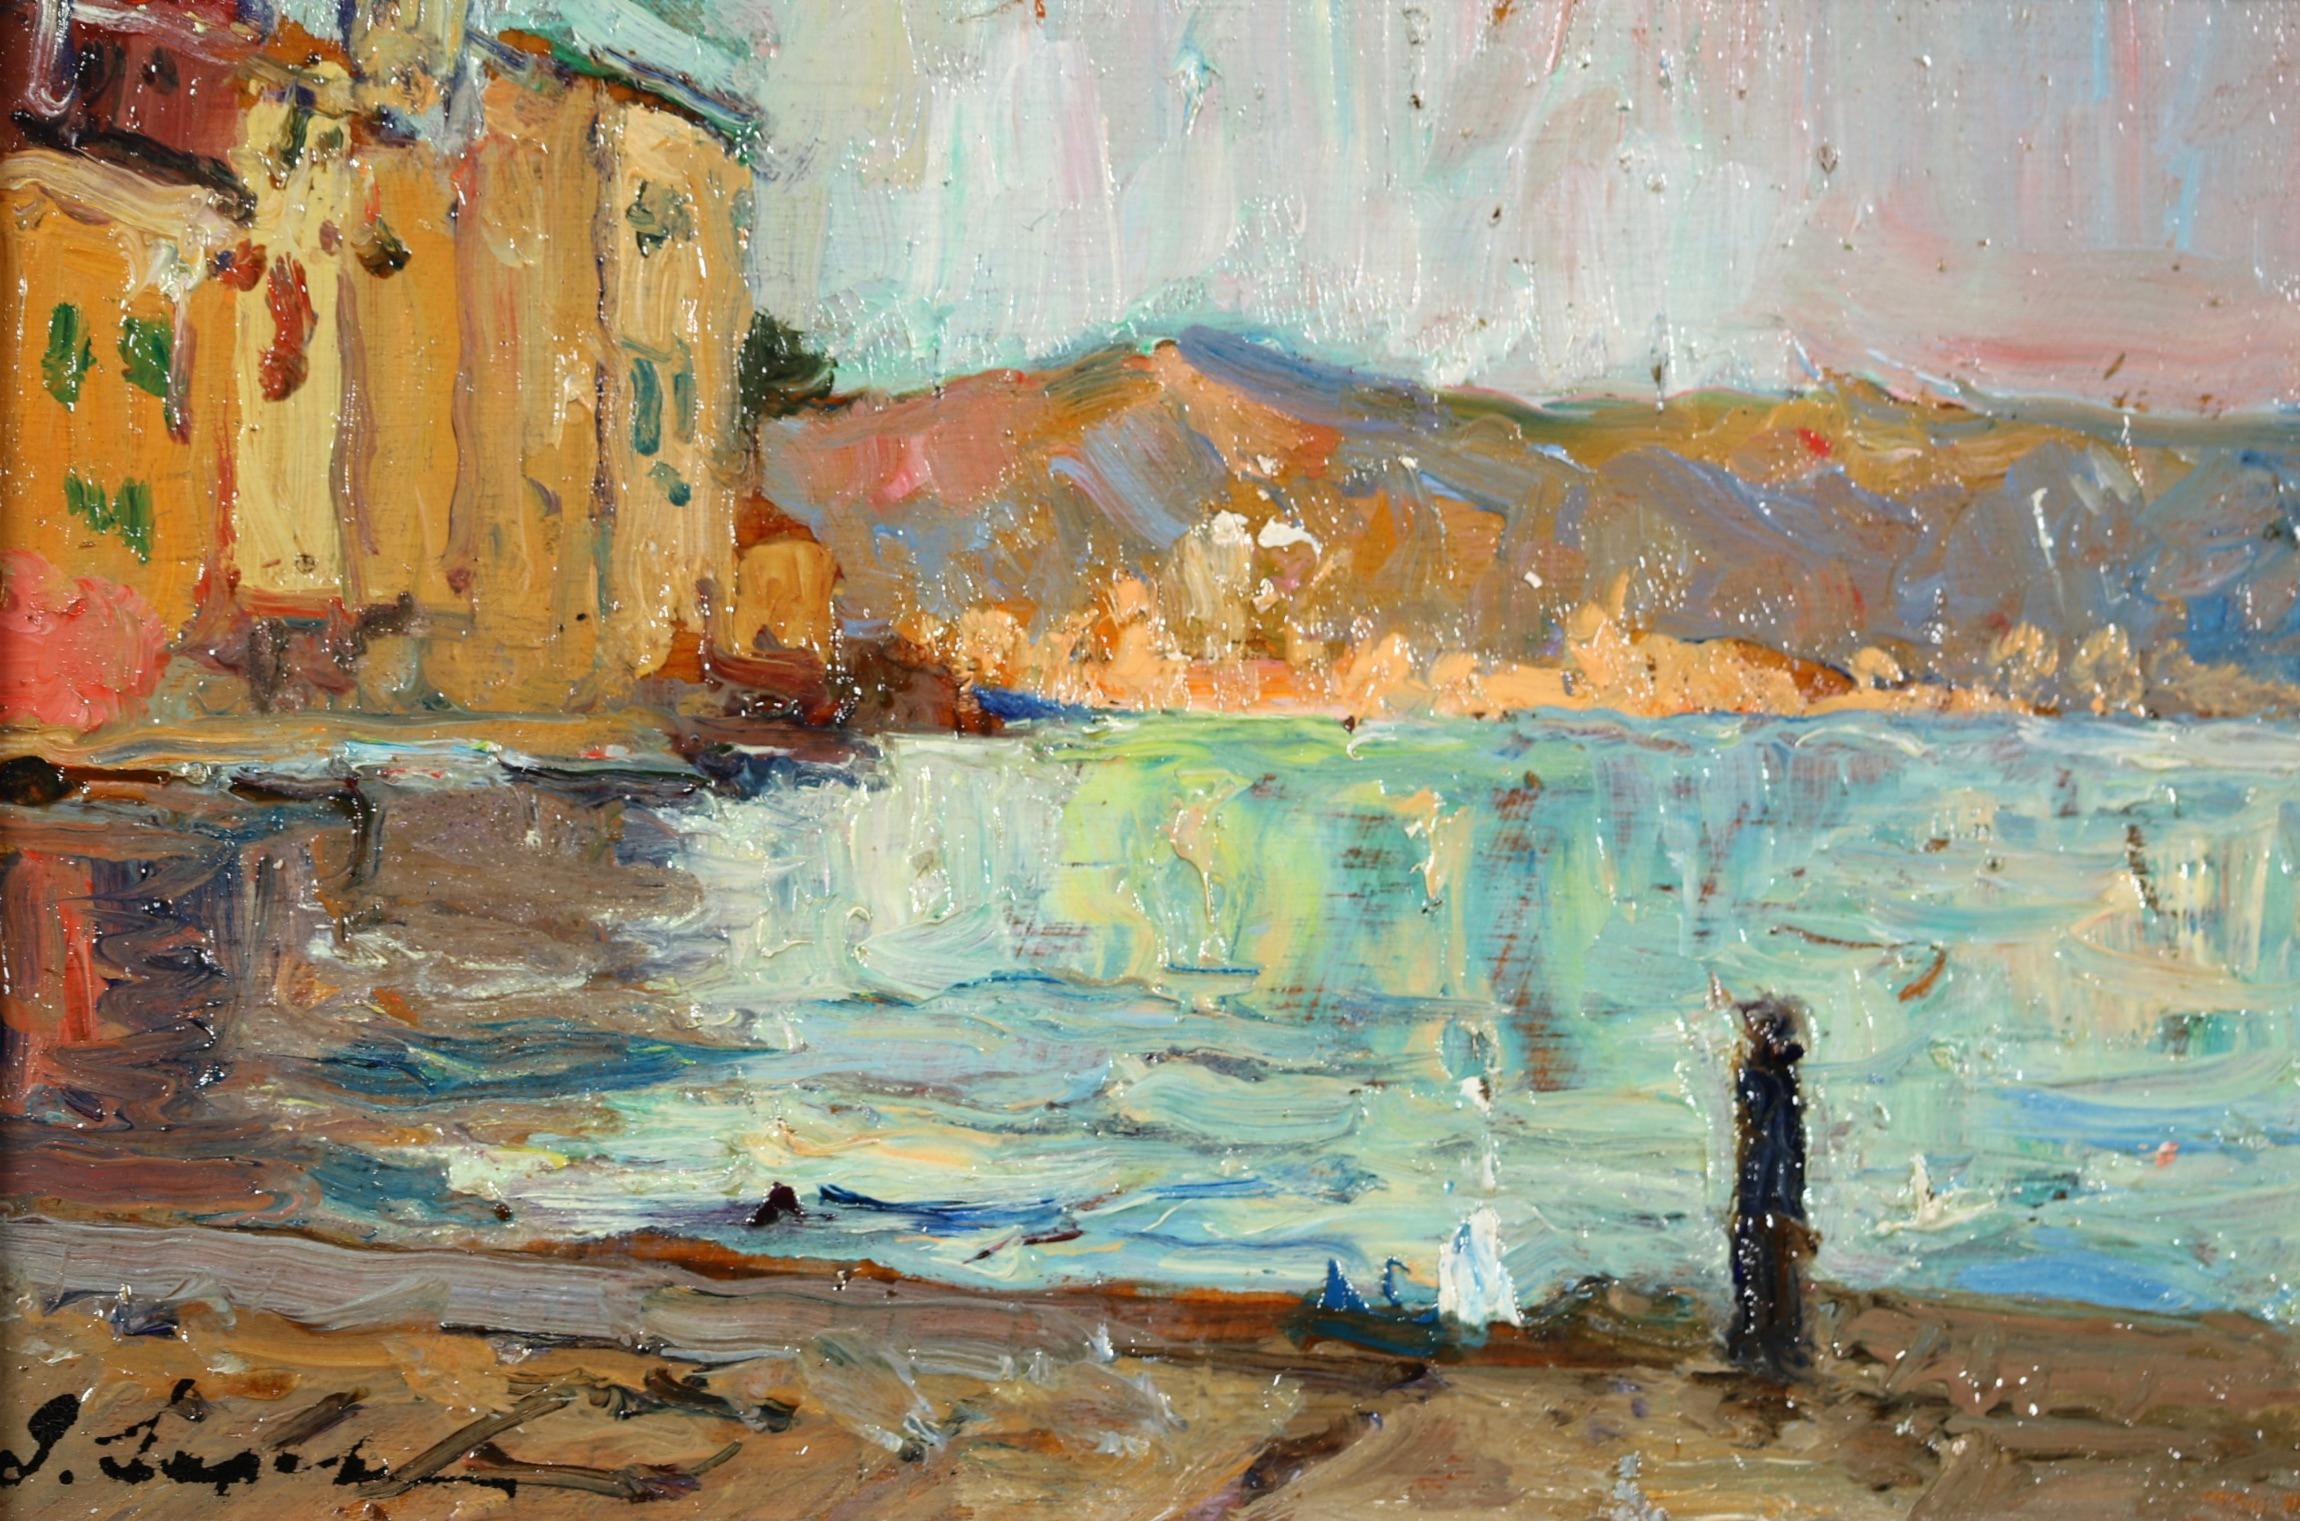 Signiertes Öl auf Karton Landschaft circa 1930 von russischen impressionistischen Maler Georges Lapchin. Das Werk zeigt einen Blick auf den Quai von Martigues in Südfrankreich. Auf der linken Seite des Bildes überblicken die hohen Gebäude das